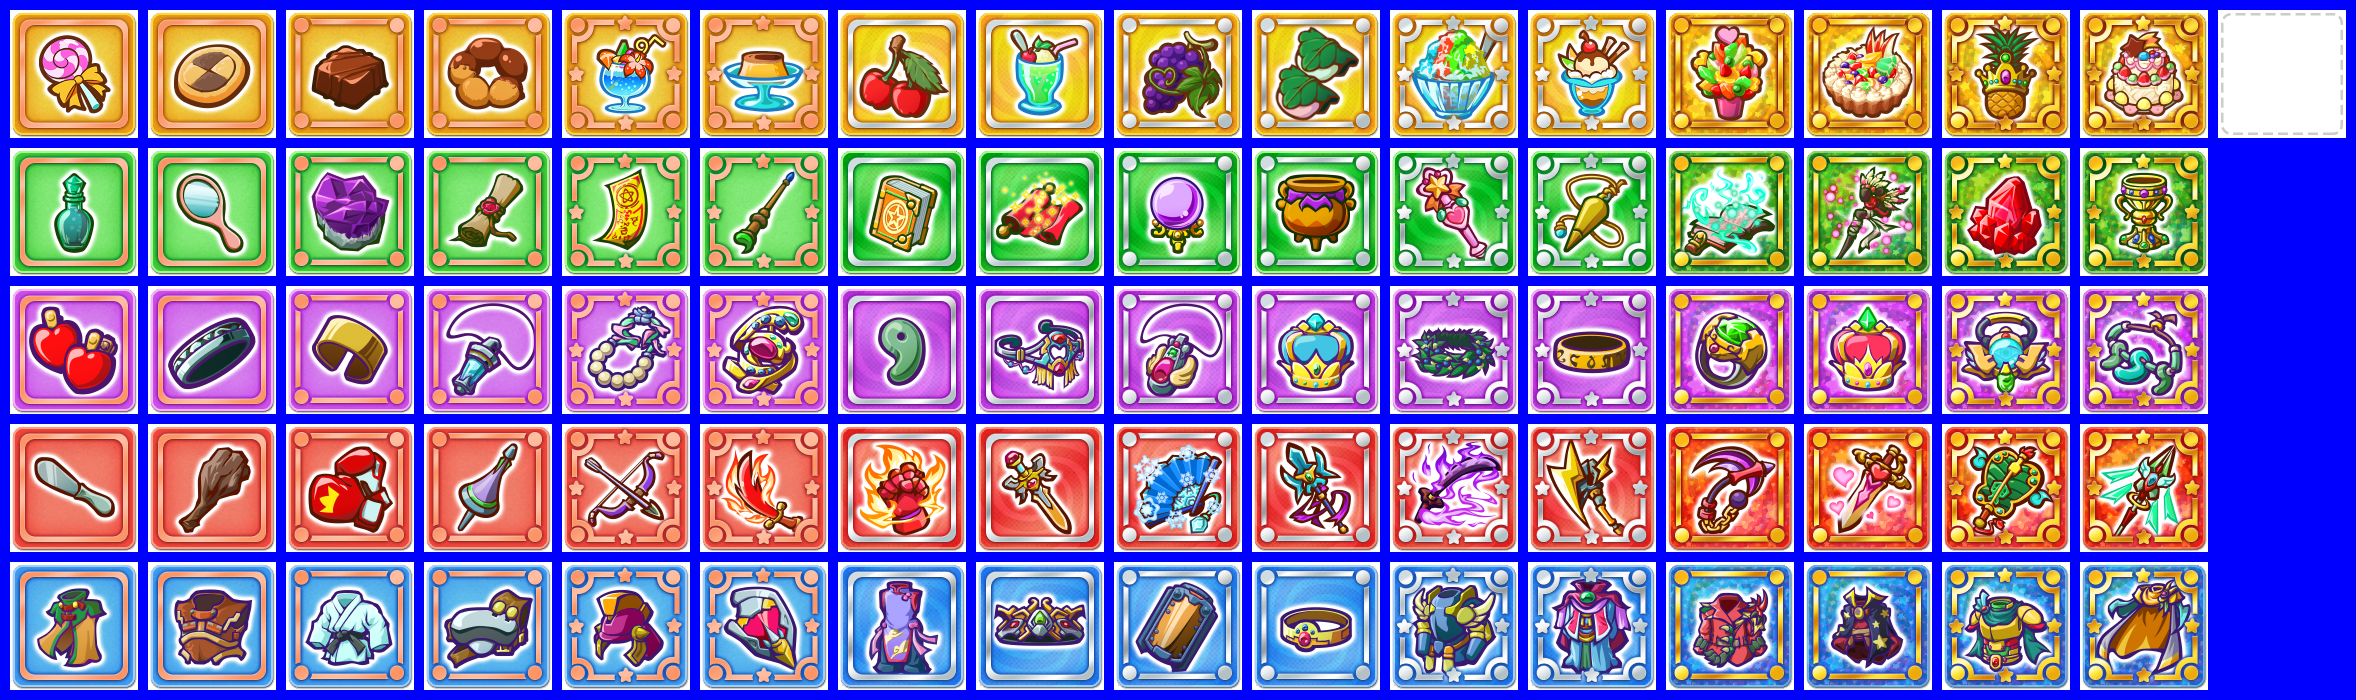 Puyo Puyo Tetris 2 - Item Cards